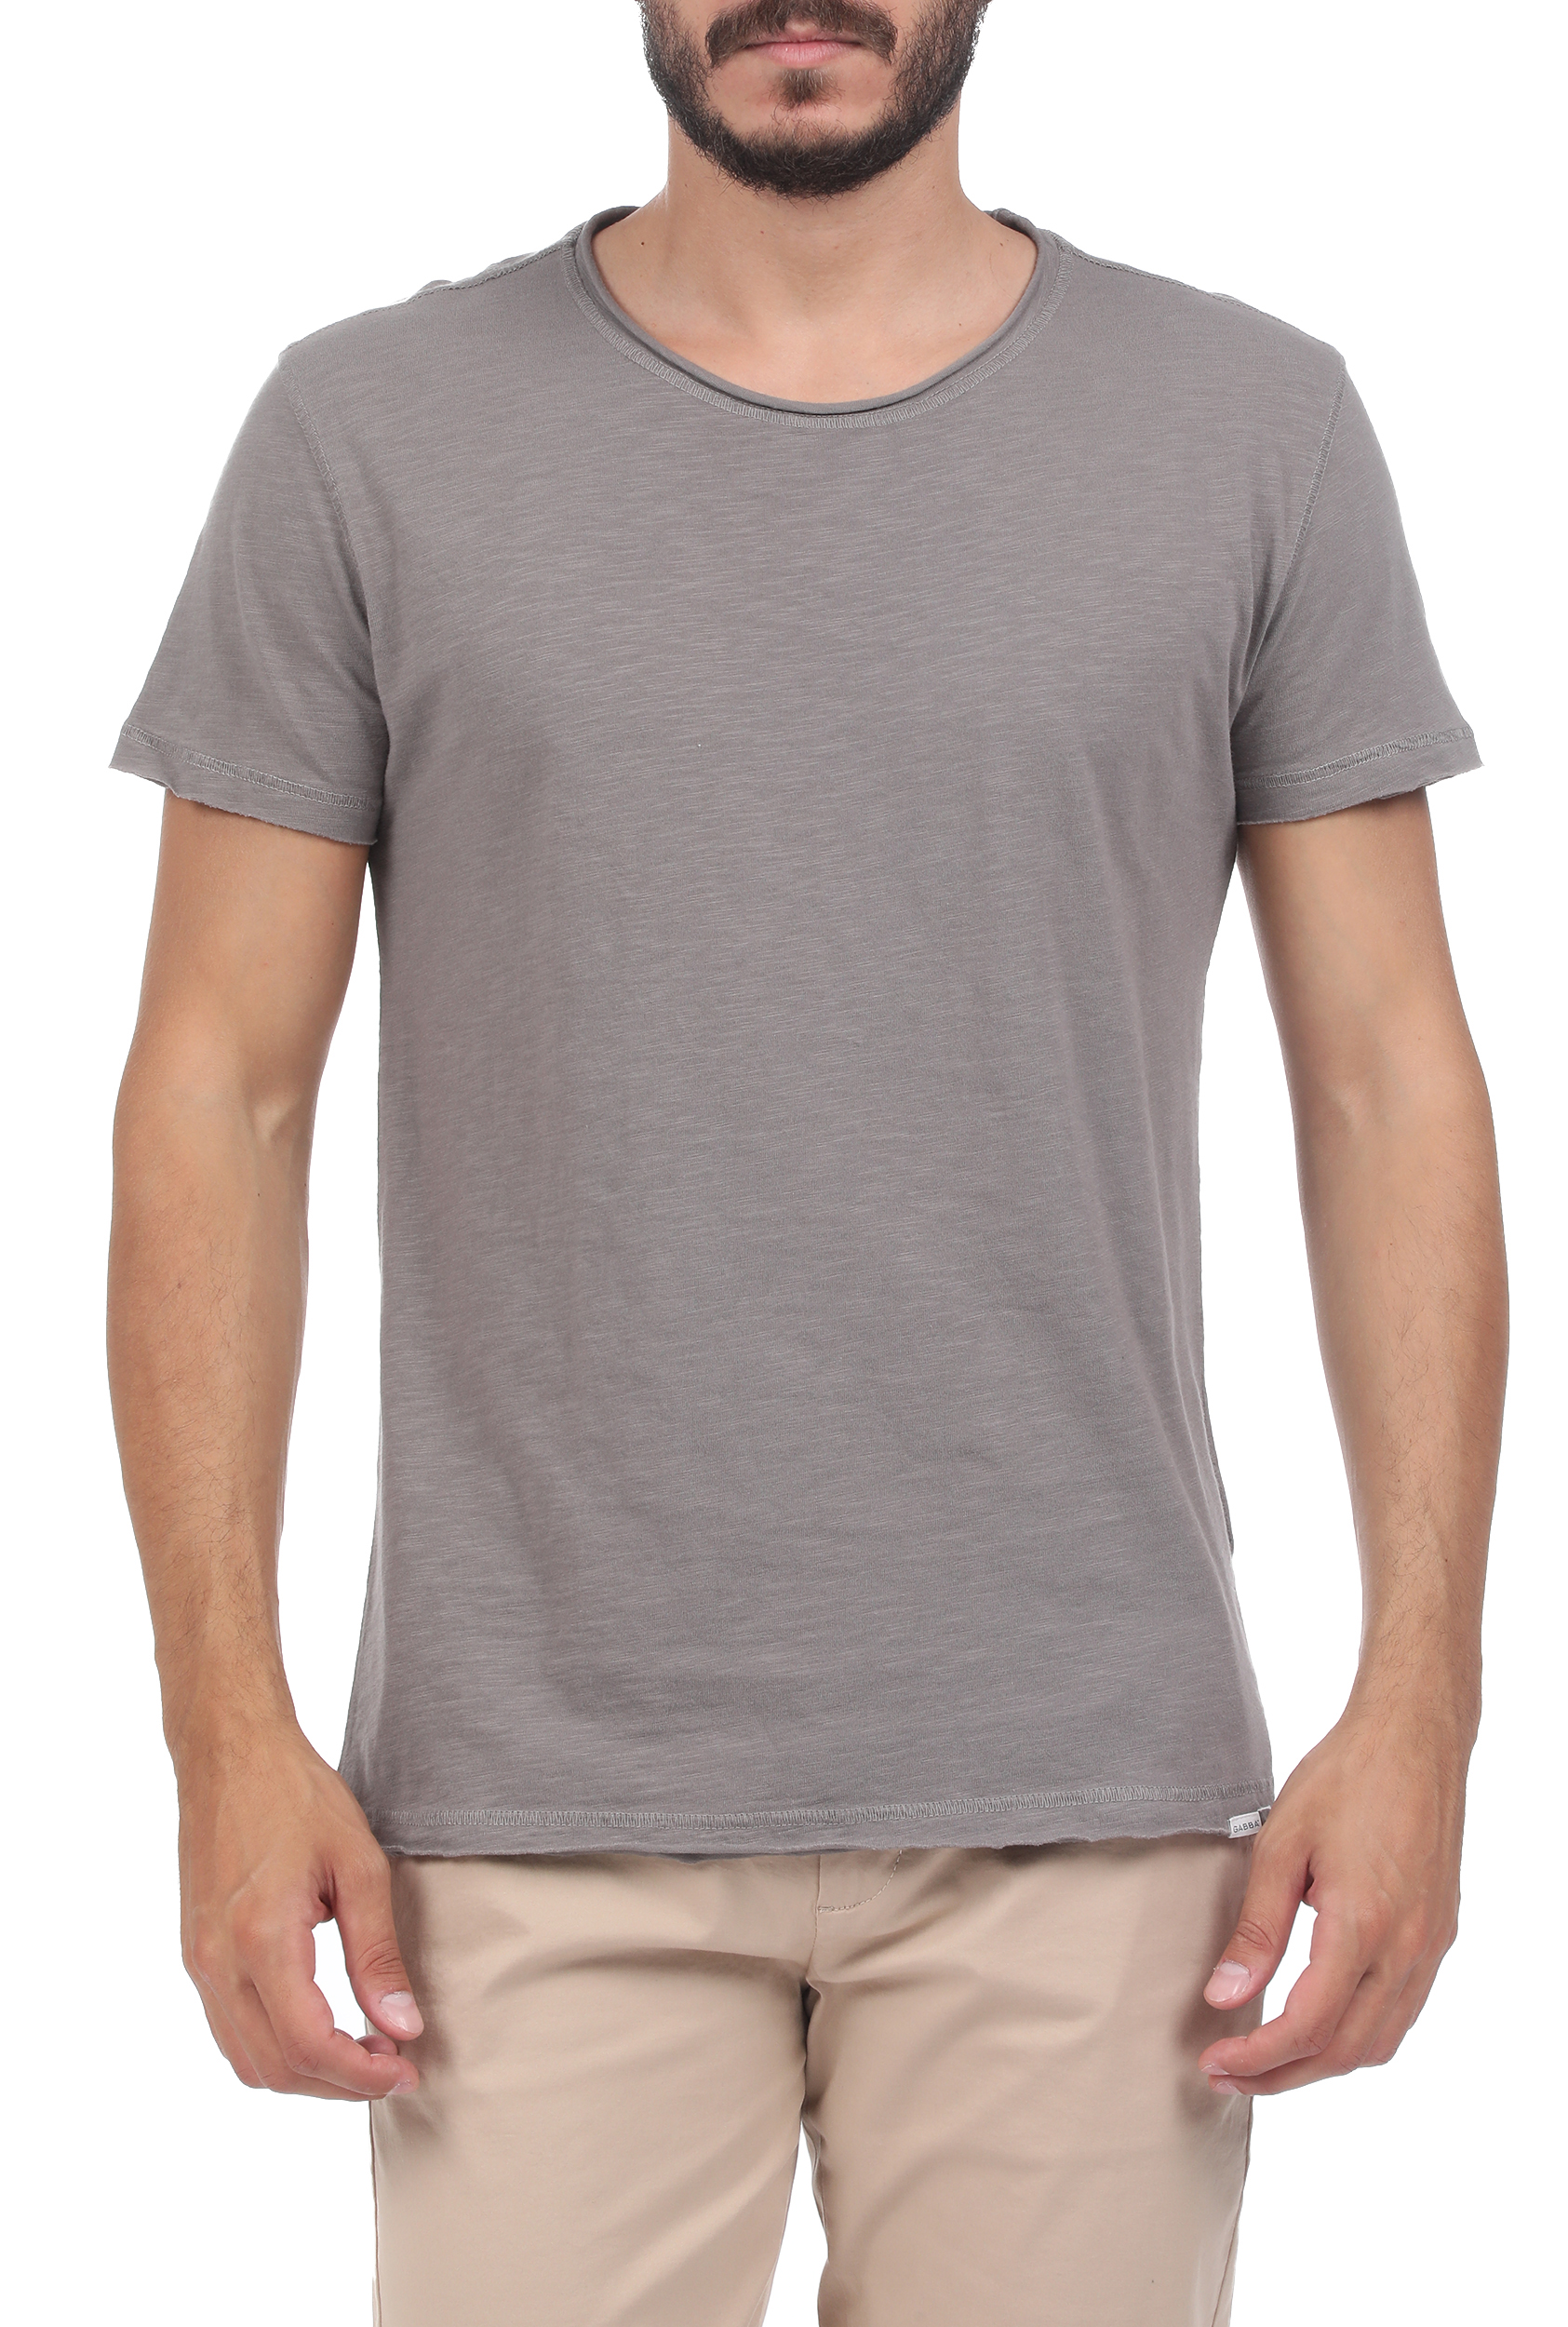 Ανδρικά/Ρούχα/Μπλούζες/Κοντομάνικες GABBA - Ανδρικό t-shirt GABBA Konrad Straight γκρι